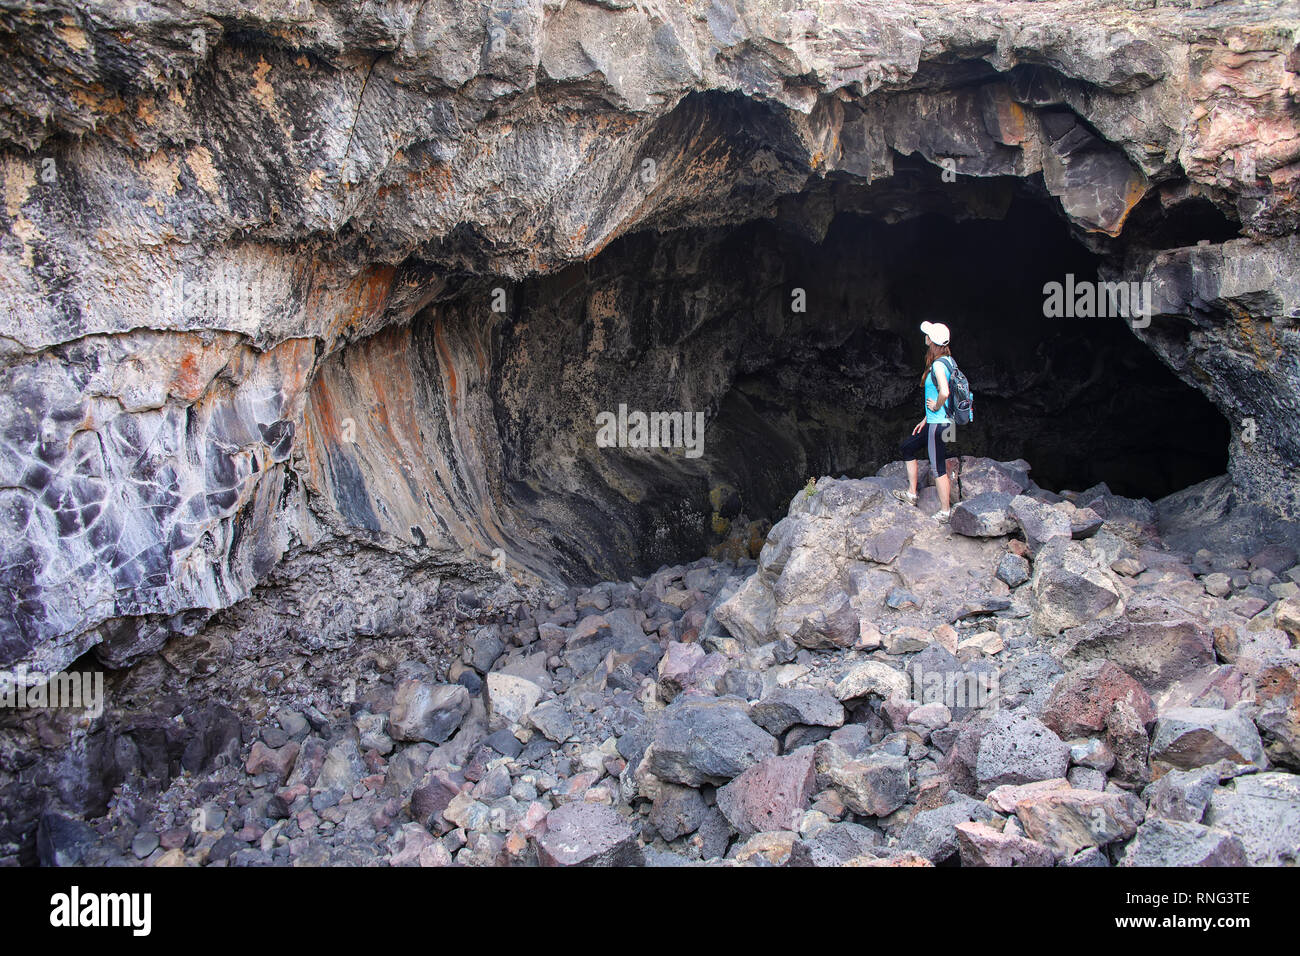 Grotte du Tunnel indiennes en cratères de la Lune National Monument, Colorado, USA. Le monument représente l'un des mieux préservés dans le basalte c Banque D'Images